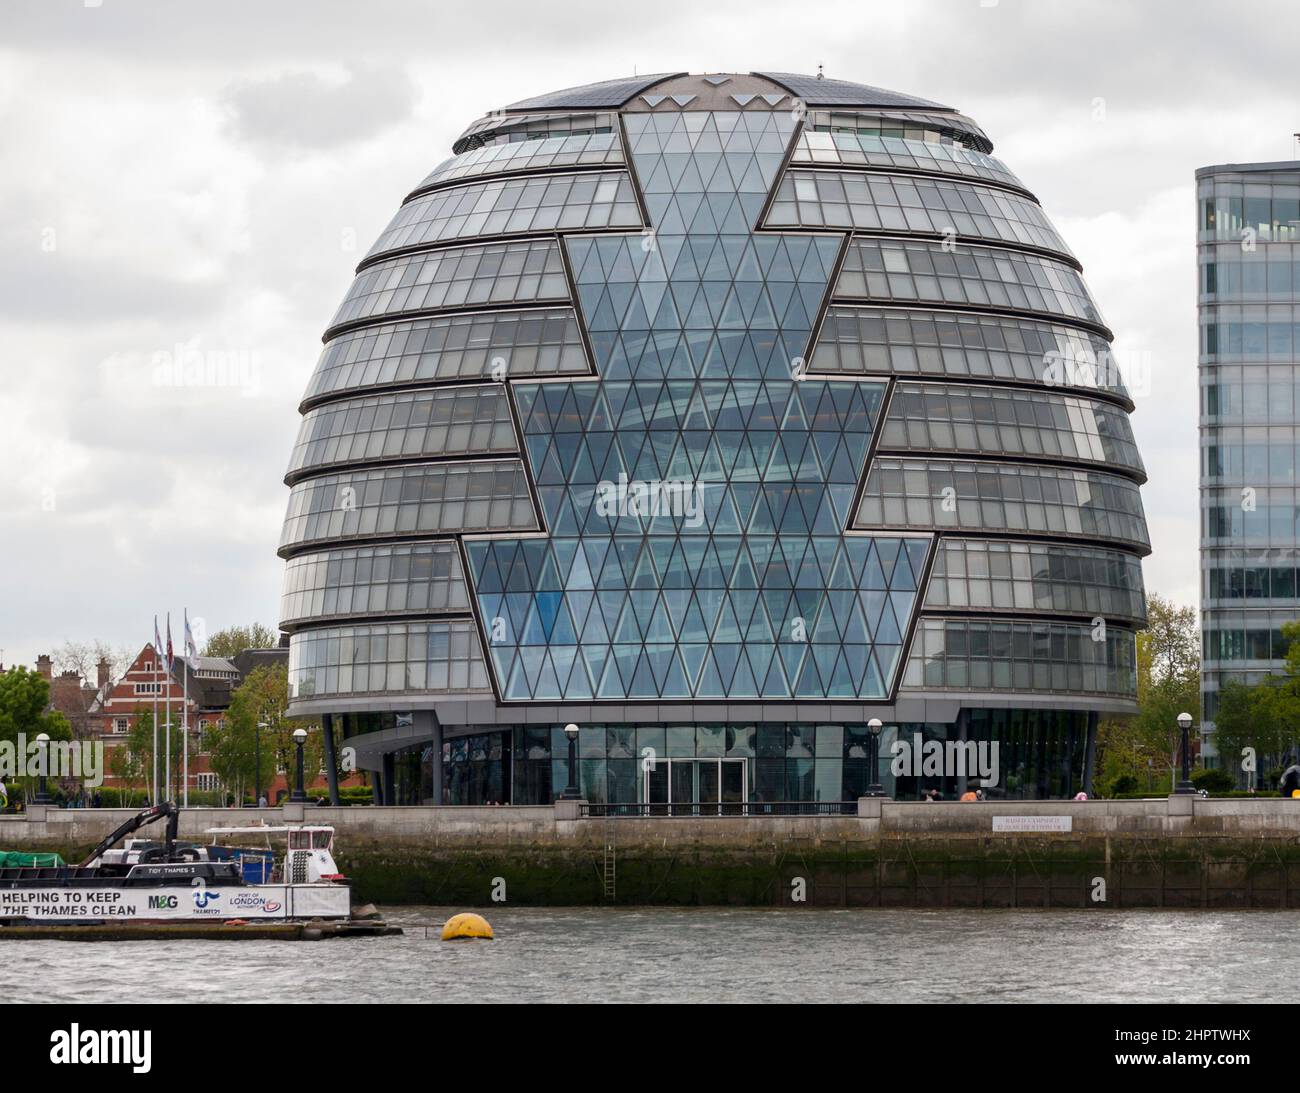 El 'huevo de cristal' de Londres por Nornman Foster: El huevo de cristal, Sir Norman Foster arquitecto 2002 está plantado en las orillas del río Támesis en el este de Londres. Foto de stock